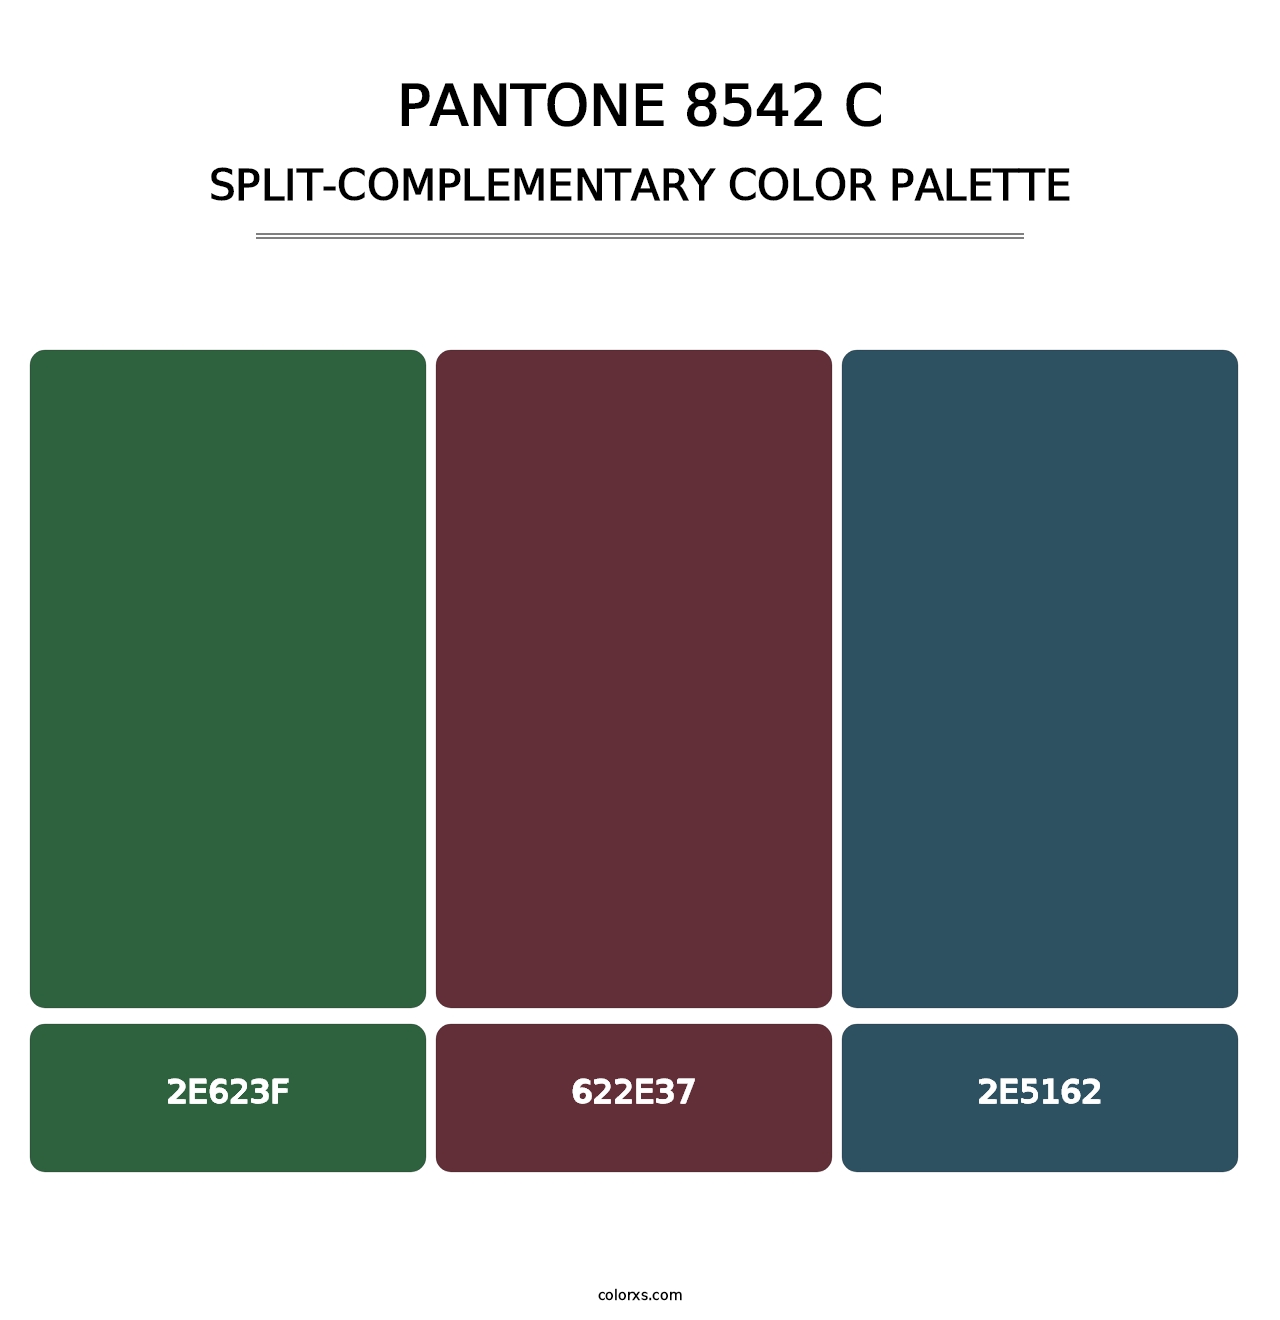 PANTONE 8542 C - Split-Complementary Color Palette